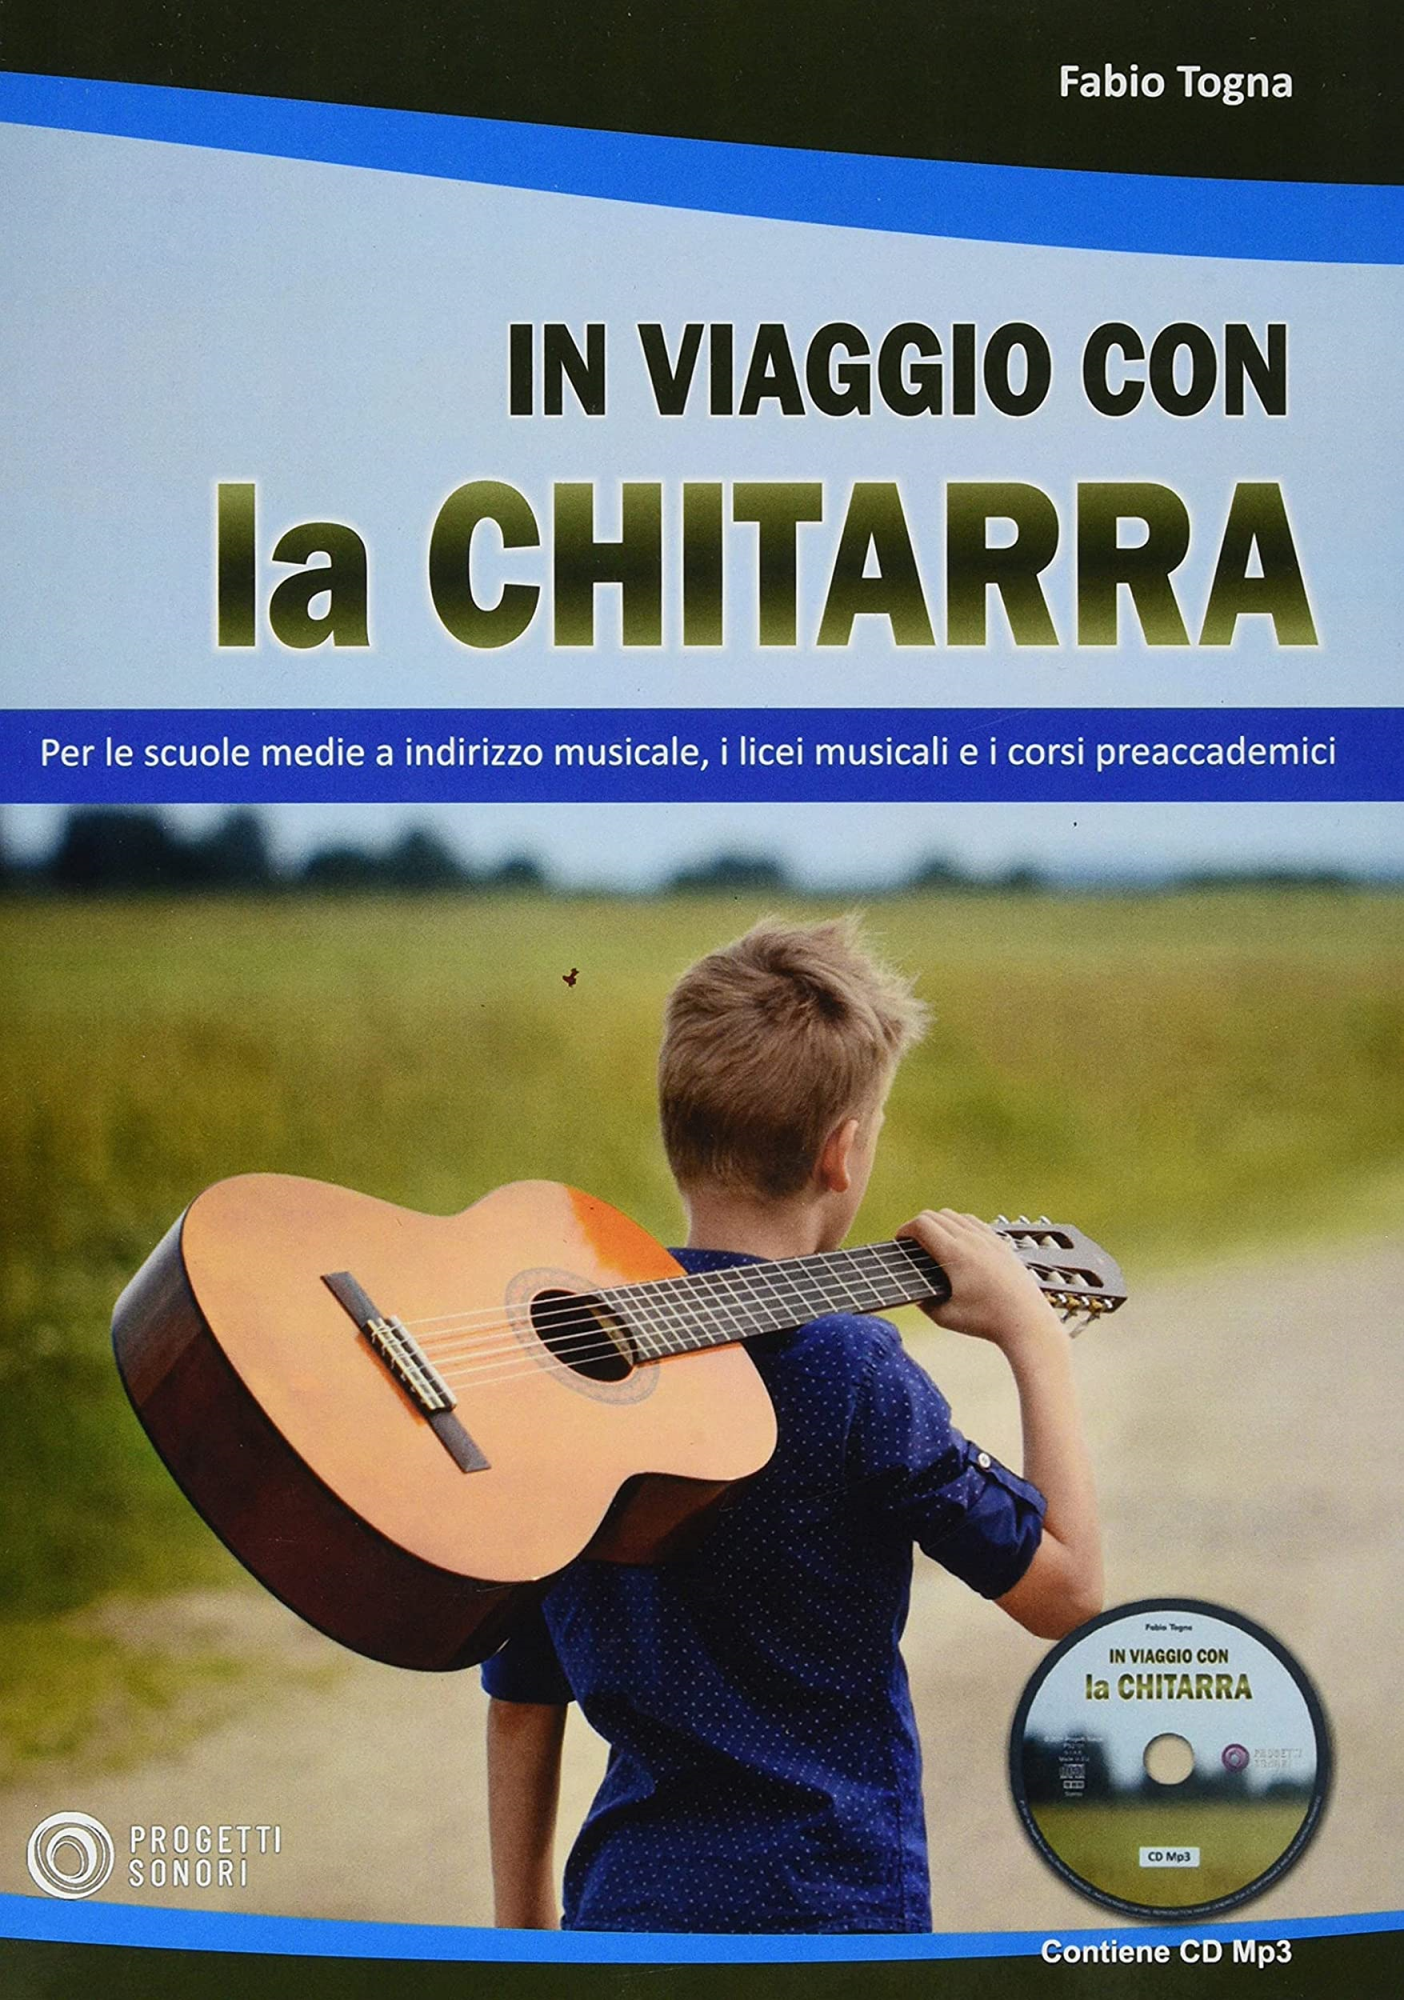 Libri Togna Fabio - In Viaggio Con La Chitarra. Con CD-Audio NUOVO SIGILLATO, EDIZIONE DEL 17/02/2021 SUBITO DISPONIBILE